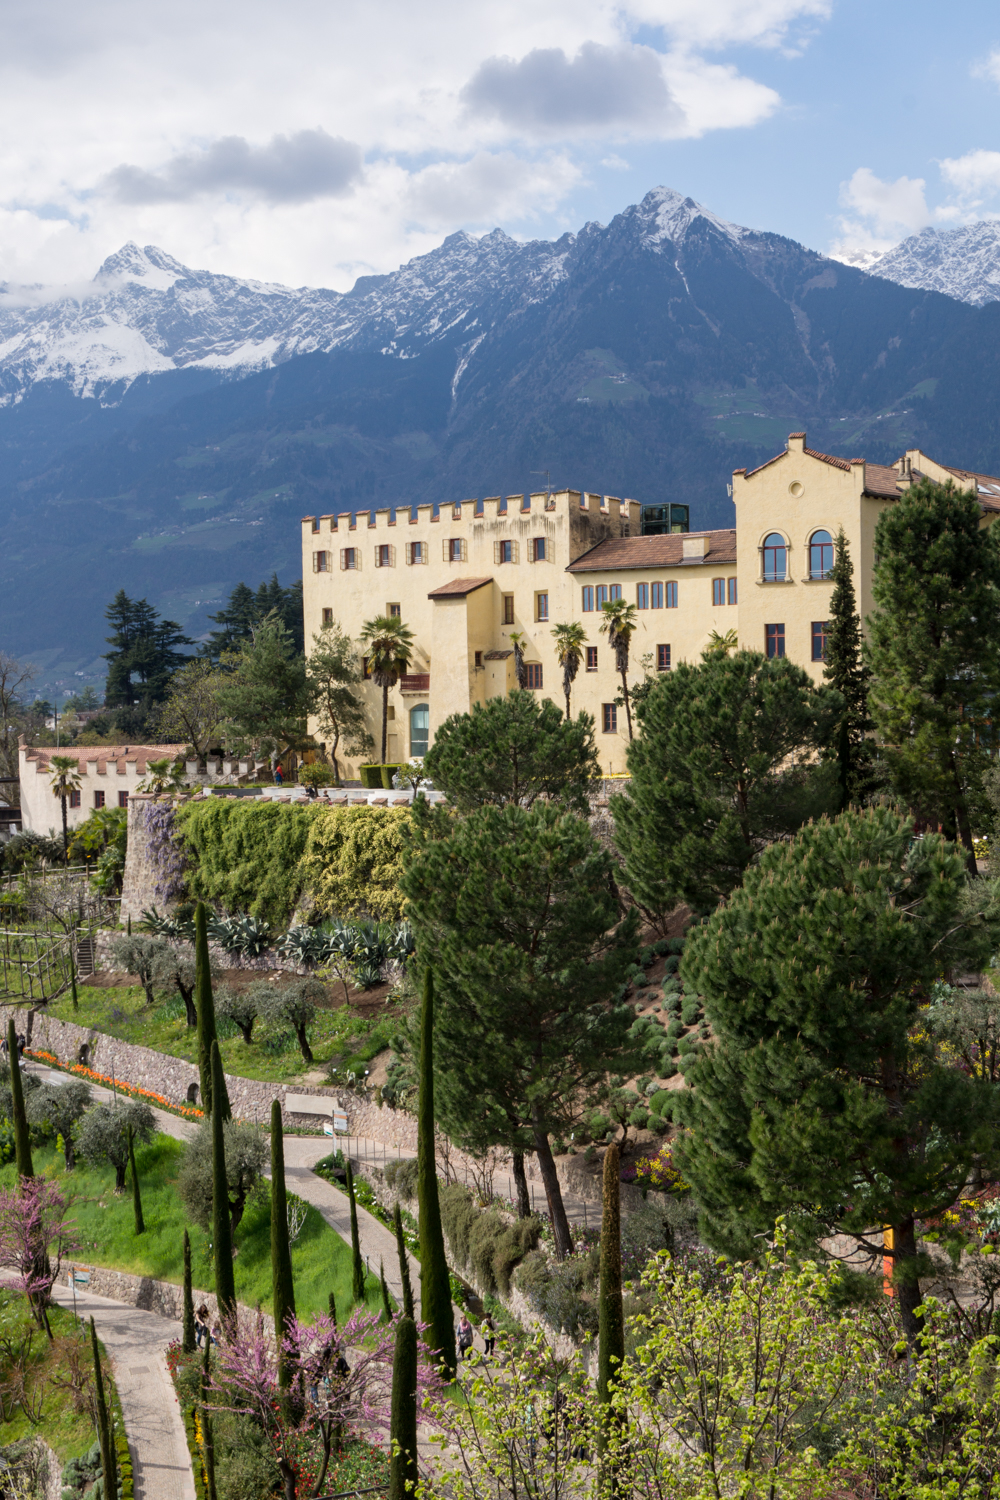 Die Gärten von Schloss Trauttmansdorff in Meran | Urlaub in Südtirol - die besten Sehenswürdigkeiten, Empfehlungen und Tipps